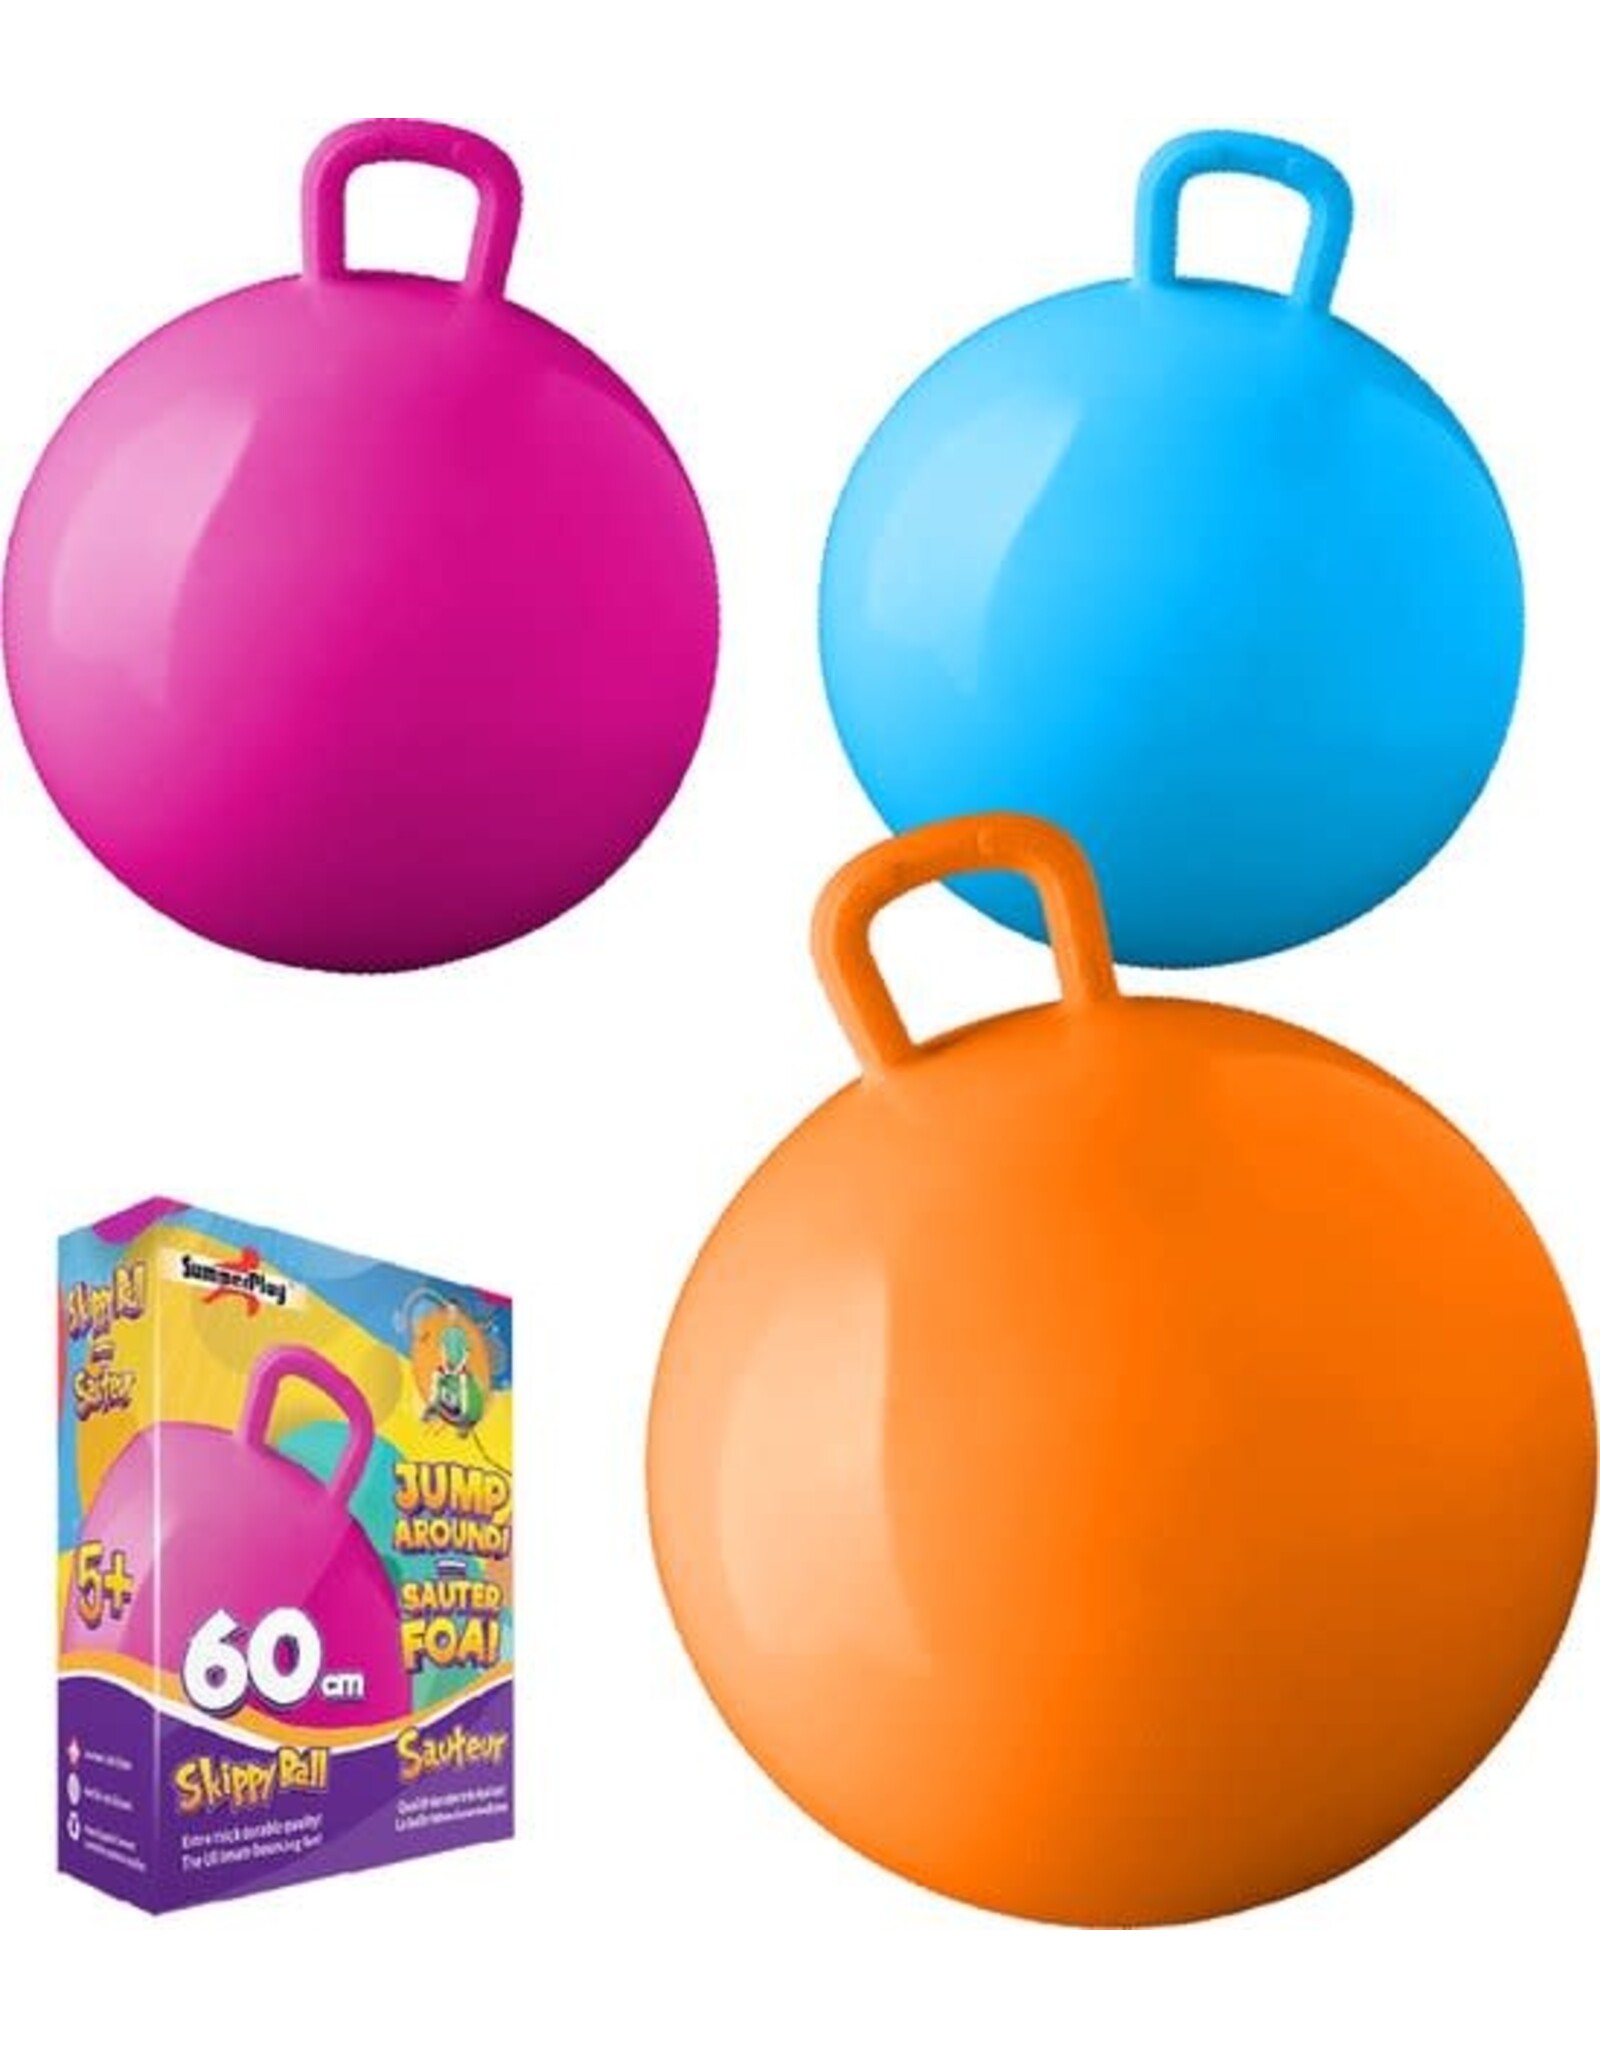 SUMMERPLAY Skippybal roze 60 cm voor kinderen - Skippyballen buitenspeelgoed voor jongens/meisjes - Sport en spel